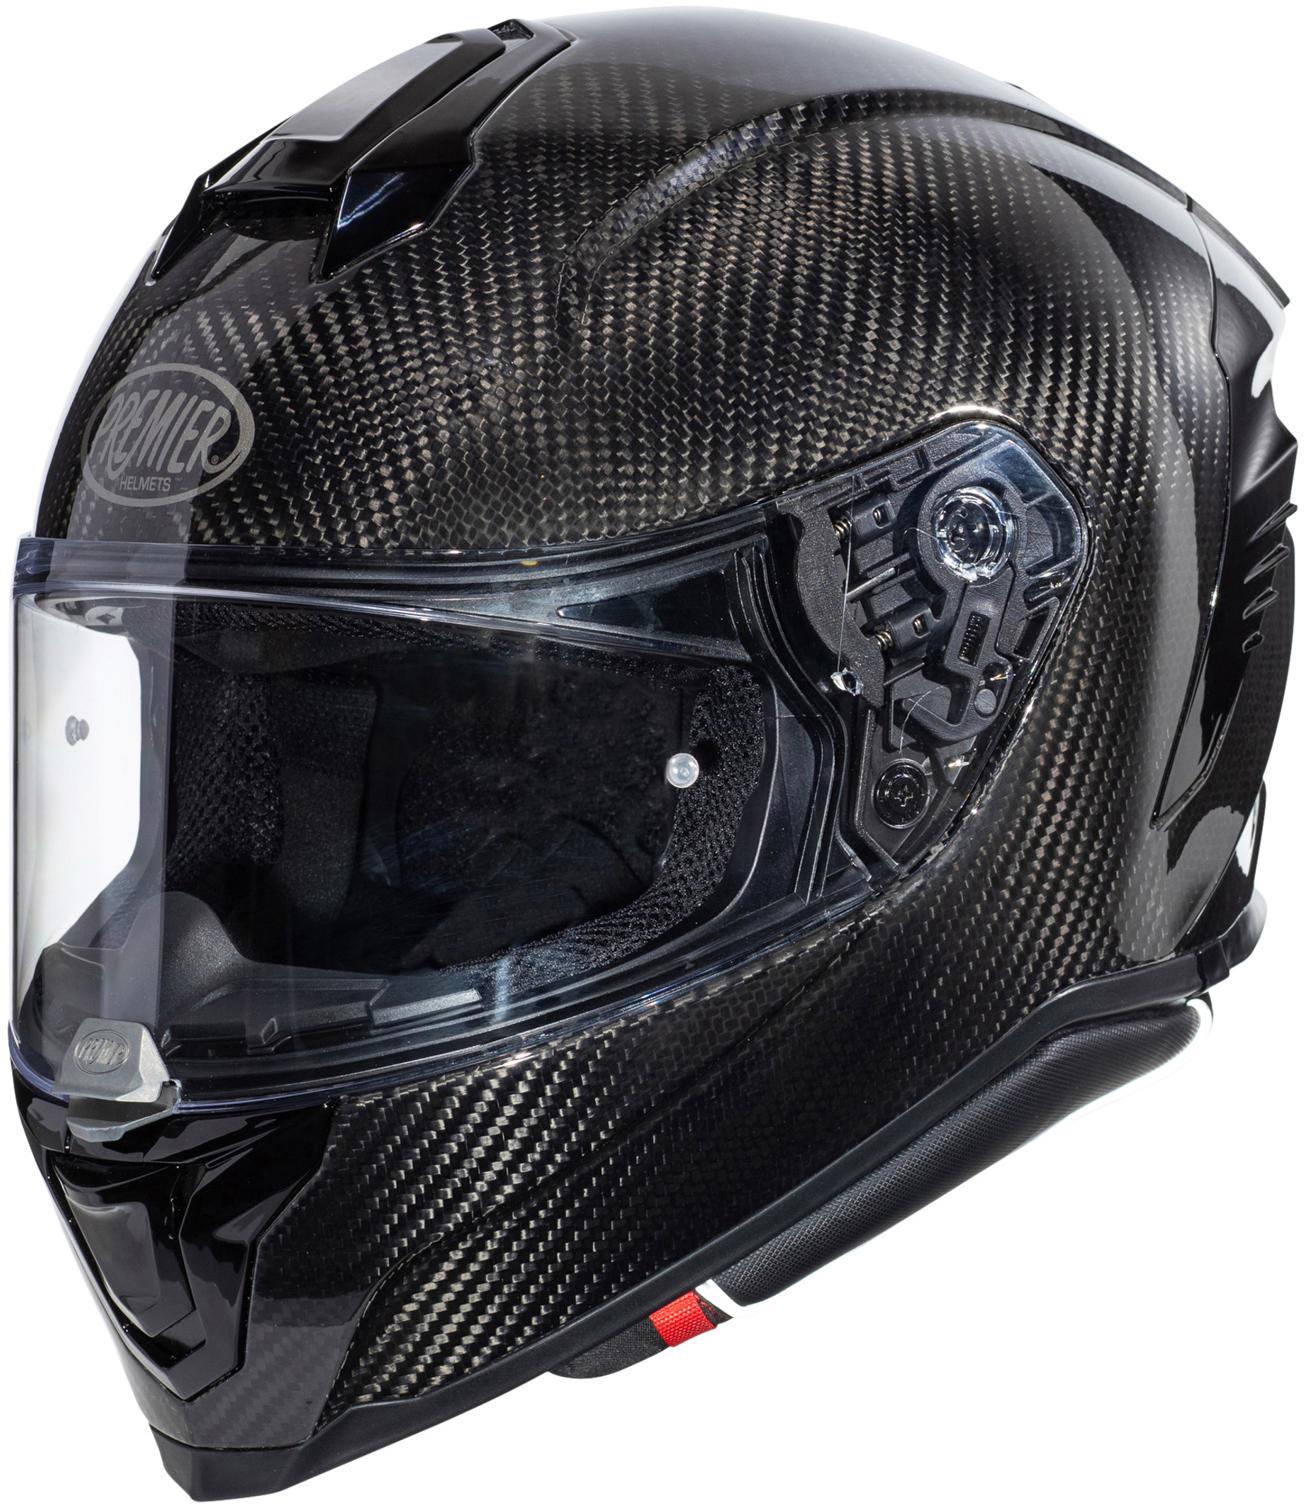 Premier Hyper Carbon Full Face Motorcycle Helmet - M